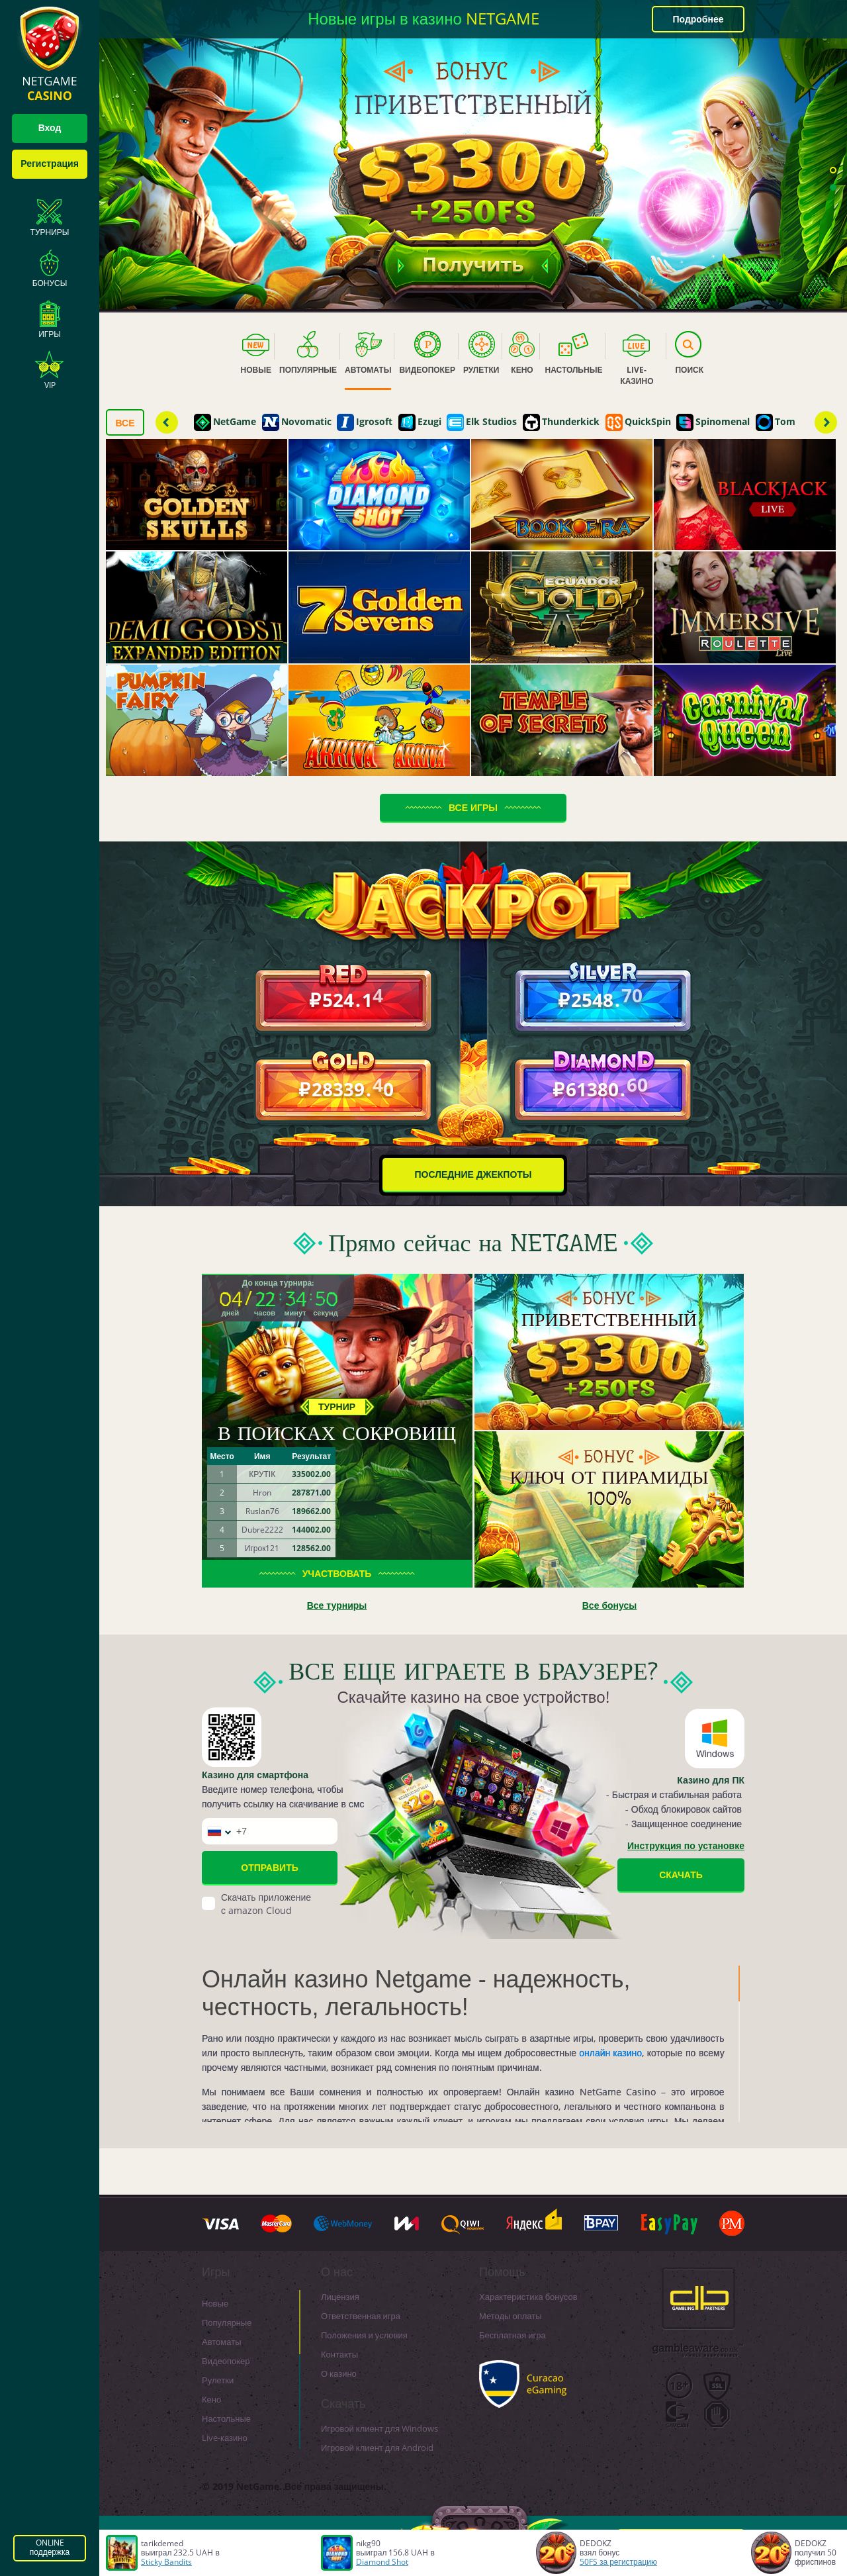 Скачать риверслот клиент игровые автоматы онлайн казино reelemperor